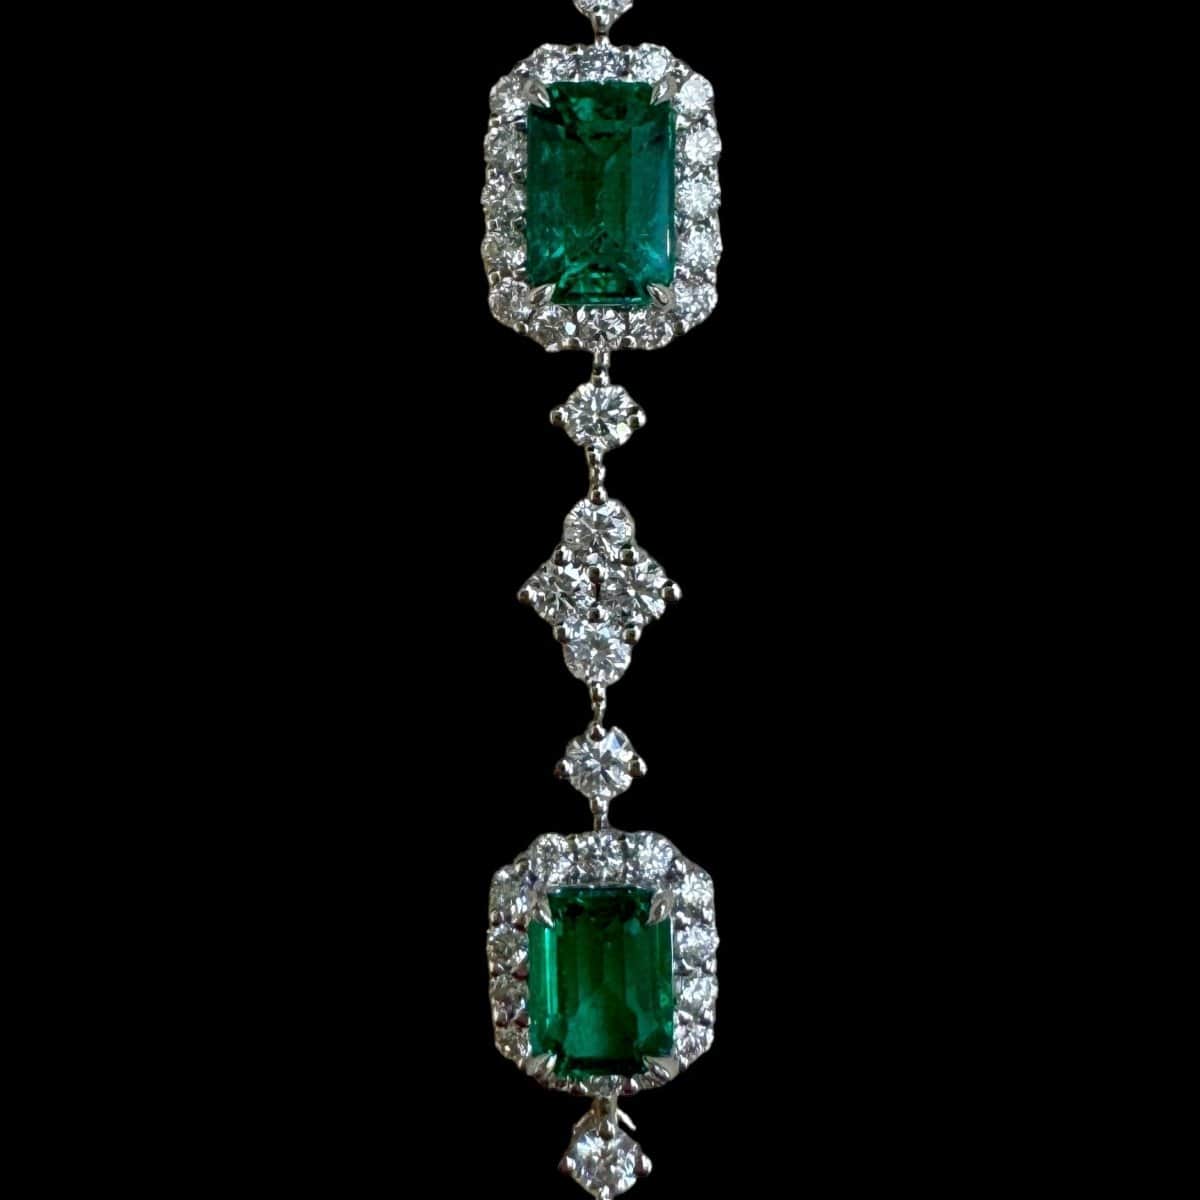 All Emerald & Diamond Bracelet set in 18K White Gold